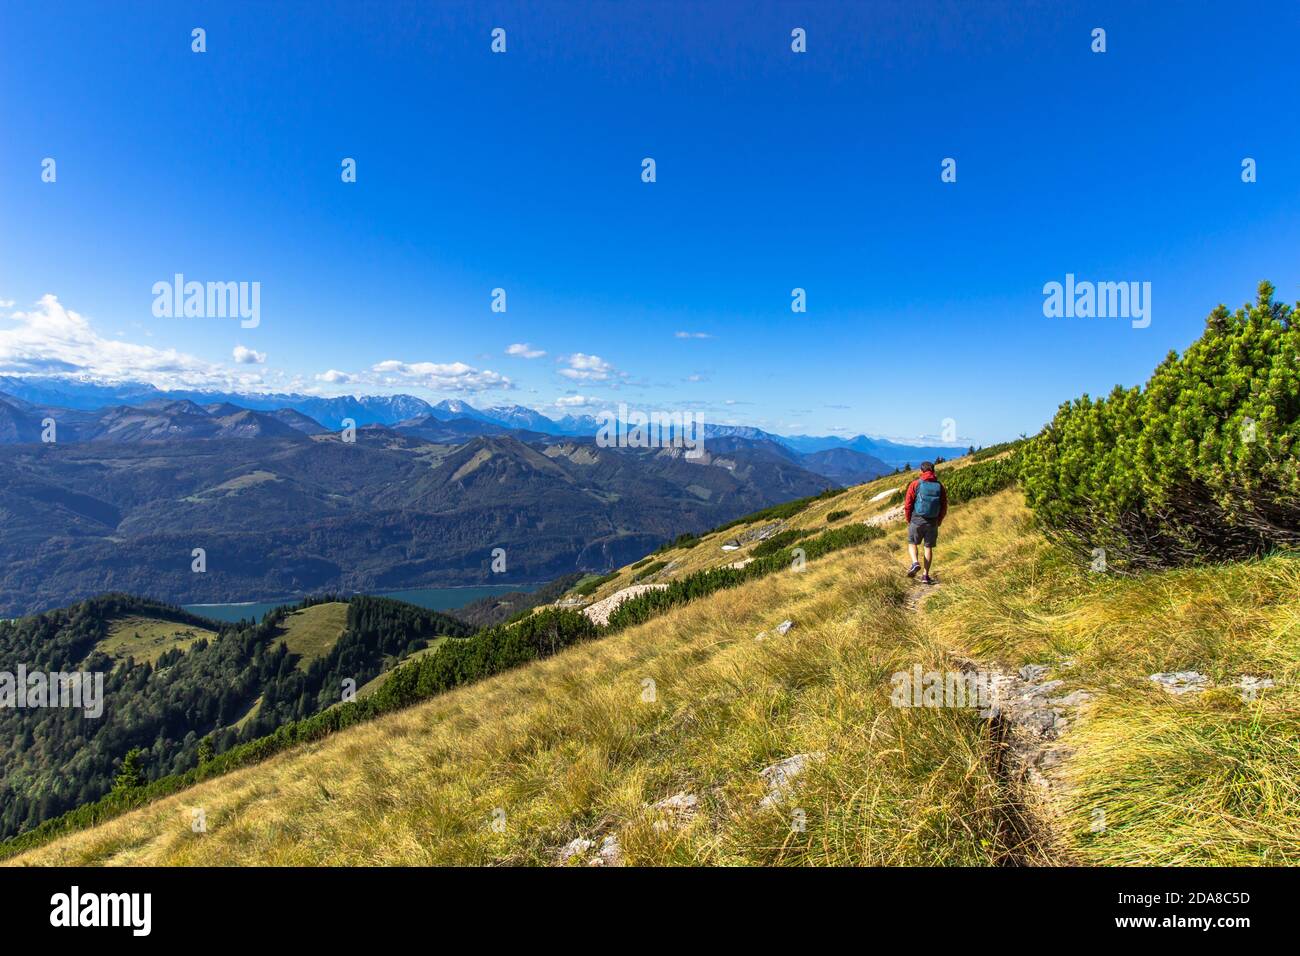 Uomo attivo escursioni sulla cima delle Alpi, Austria.Backpacker godendo di vista del panorama di montagna e lago.Escursionismo in estate luminoso sole day.Wanderlust Foto Stock